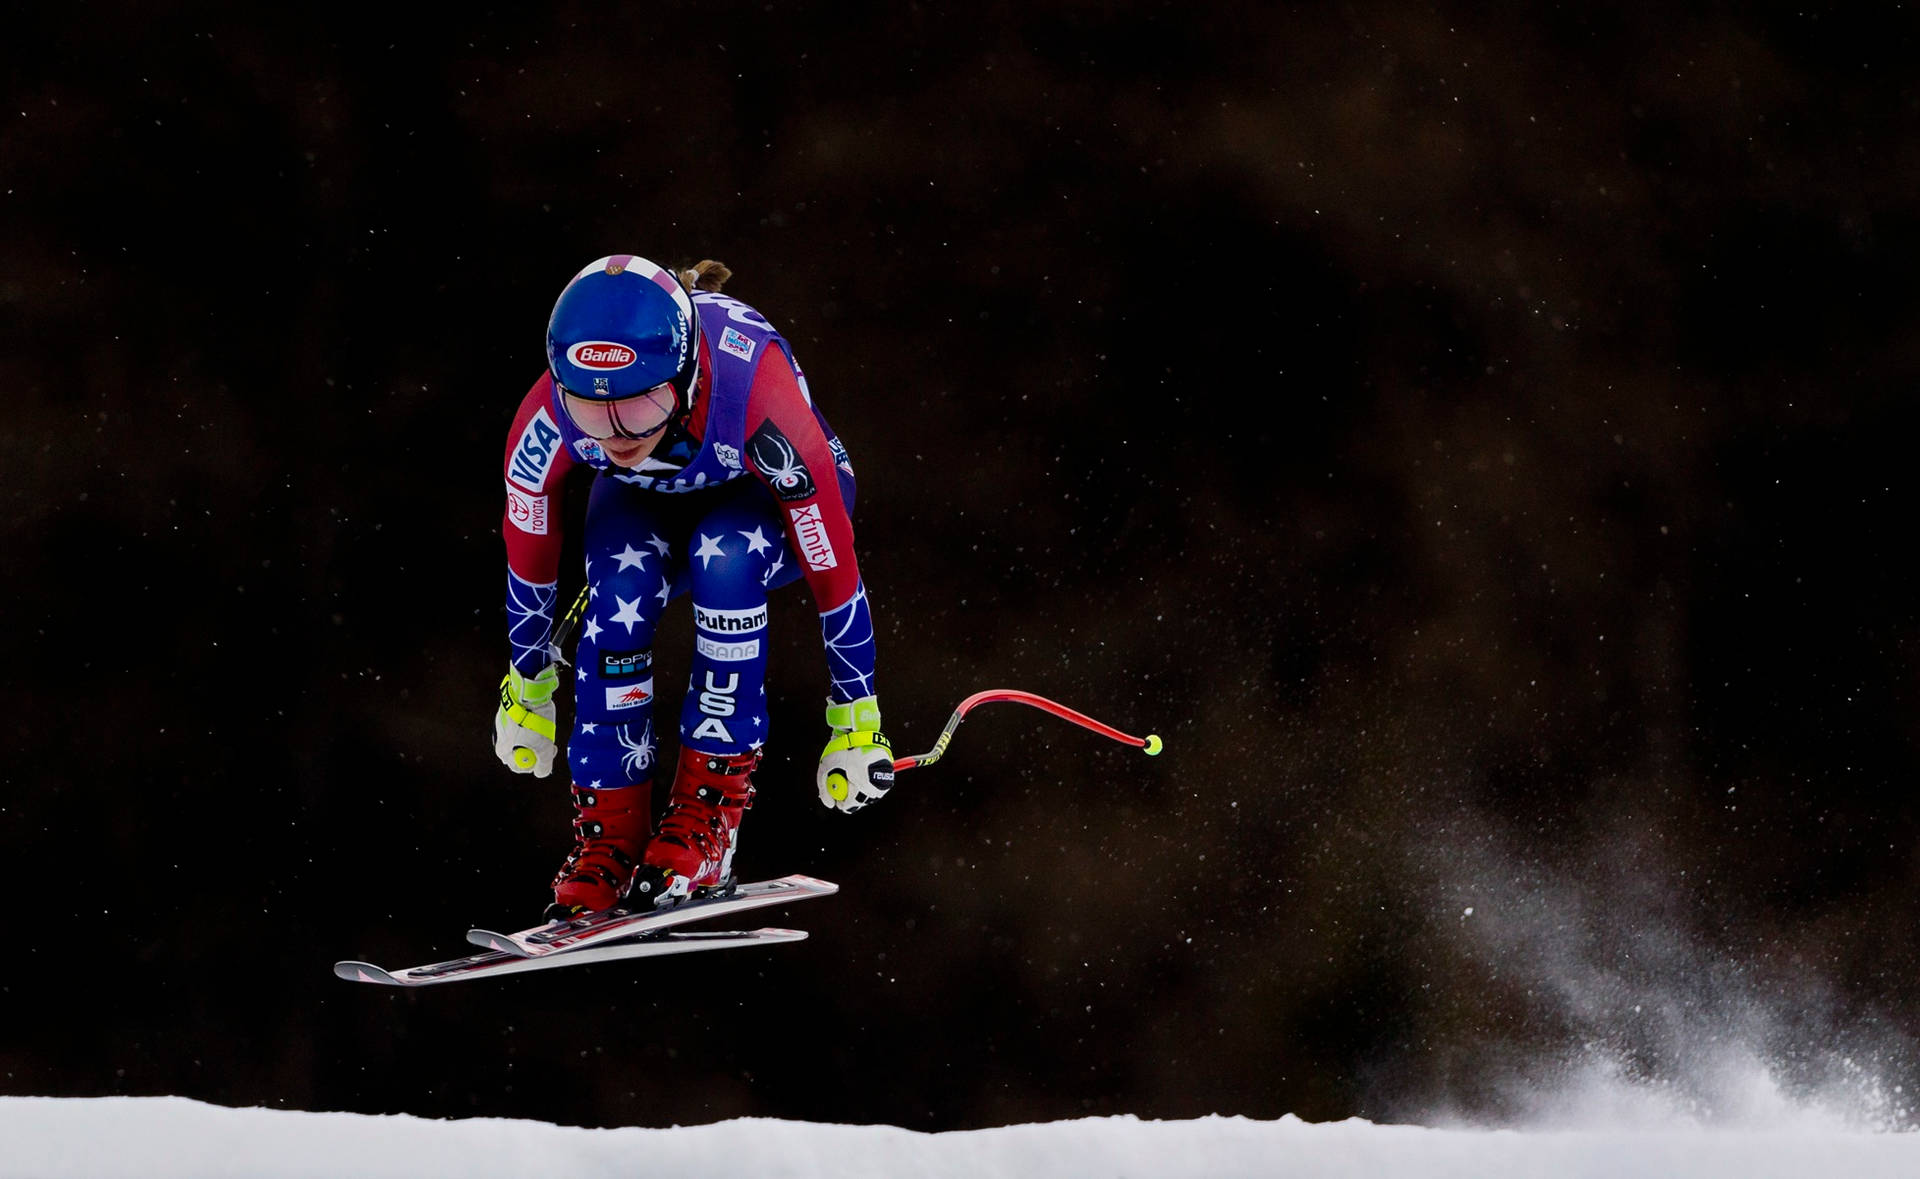 Campionedi Sci Alpino Mikaela Shiffrin In Azione Sfondo